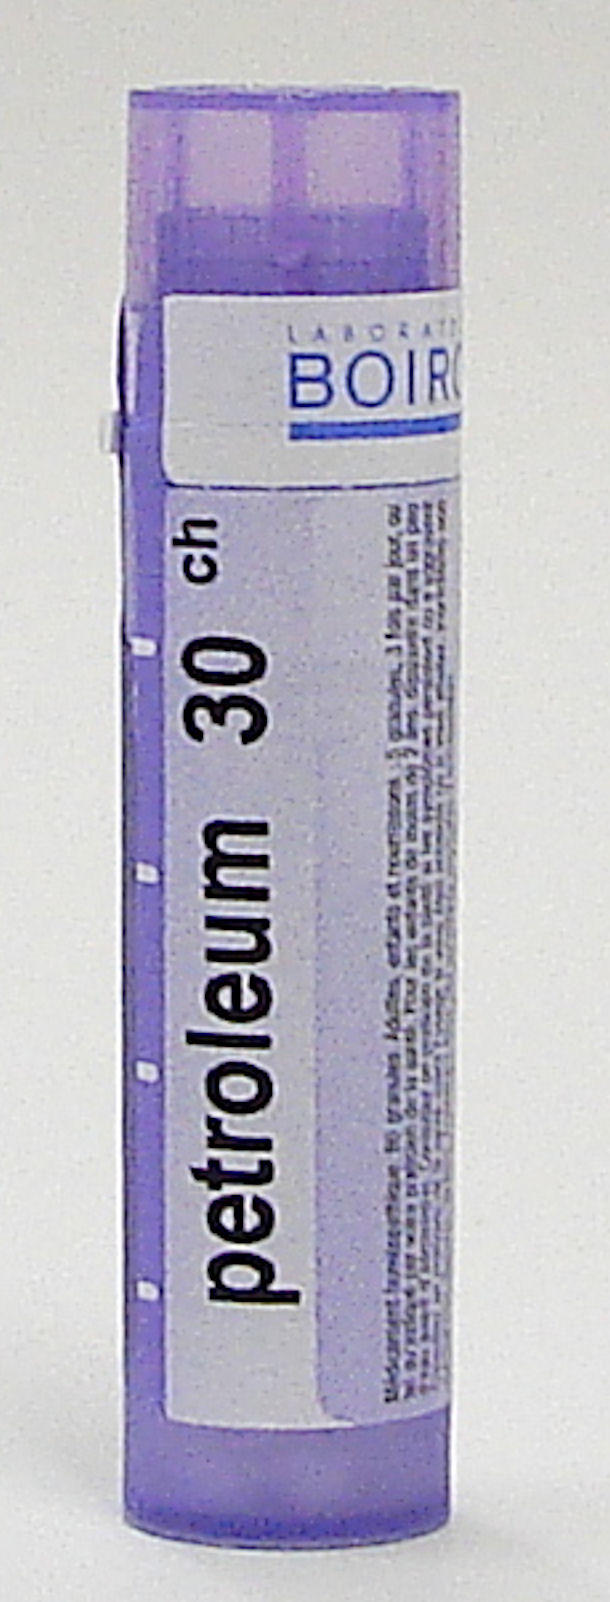 Petroleum 30ch sublingual pellets (Boiron)